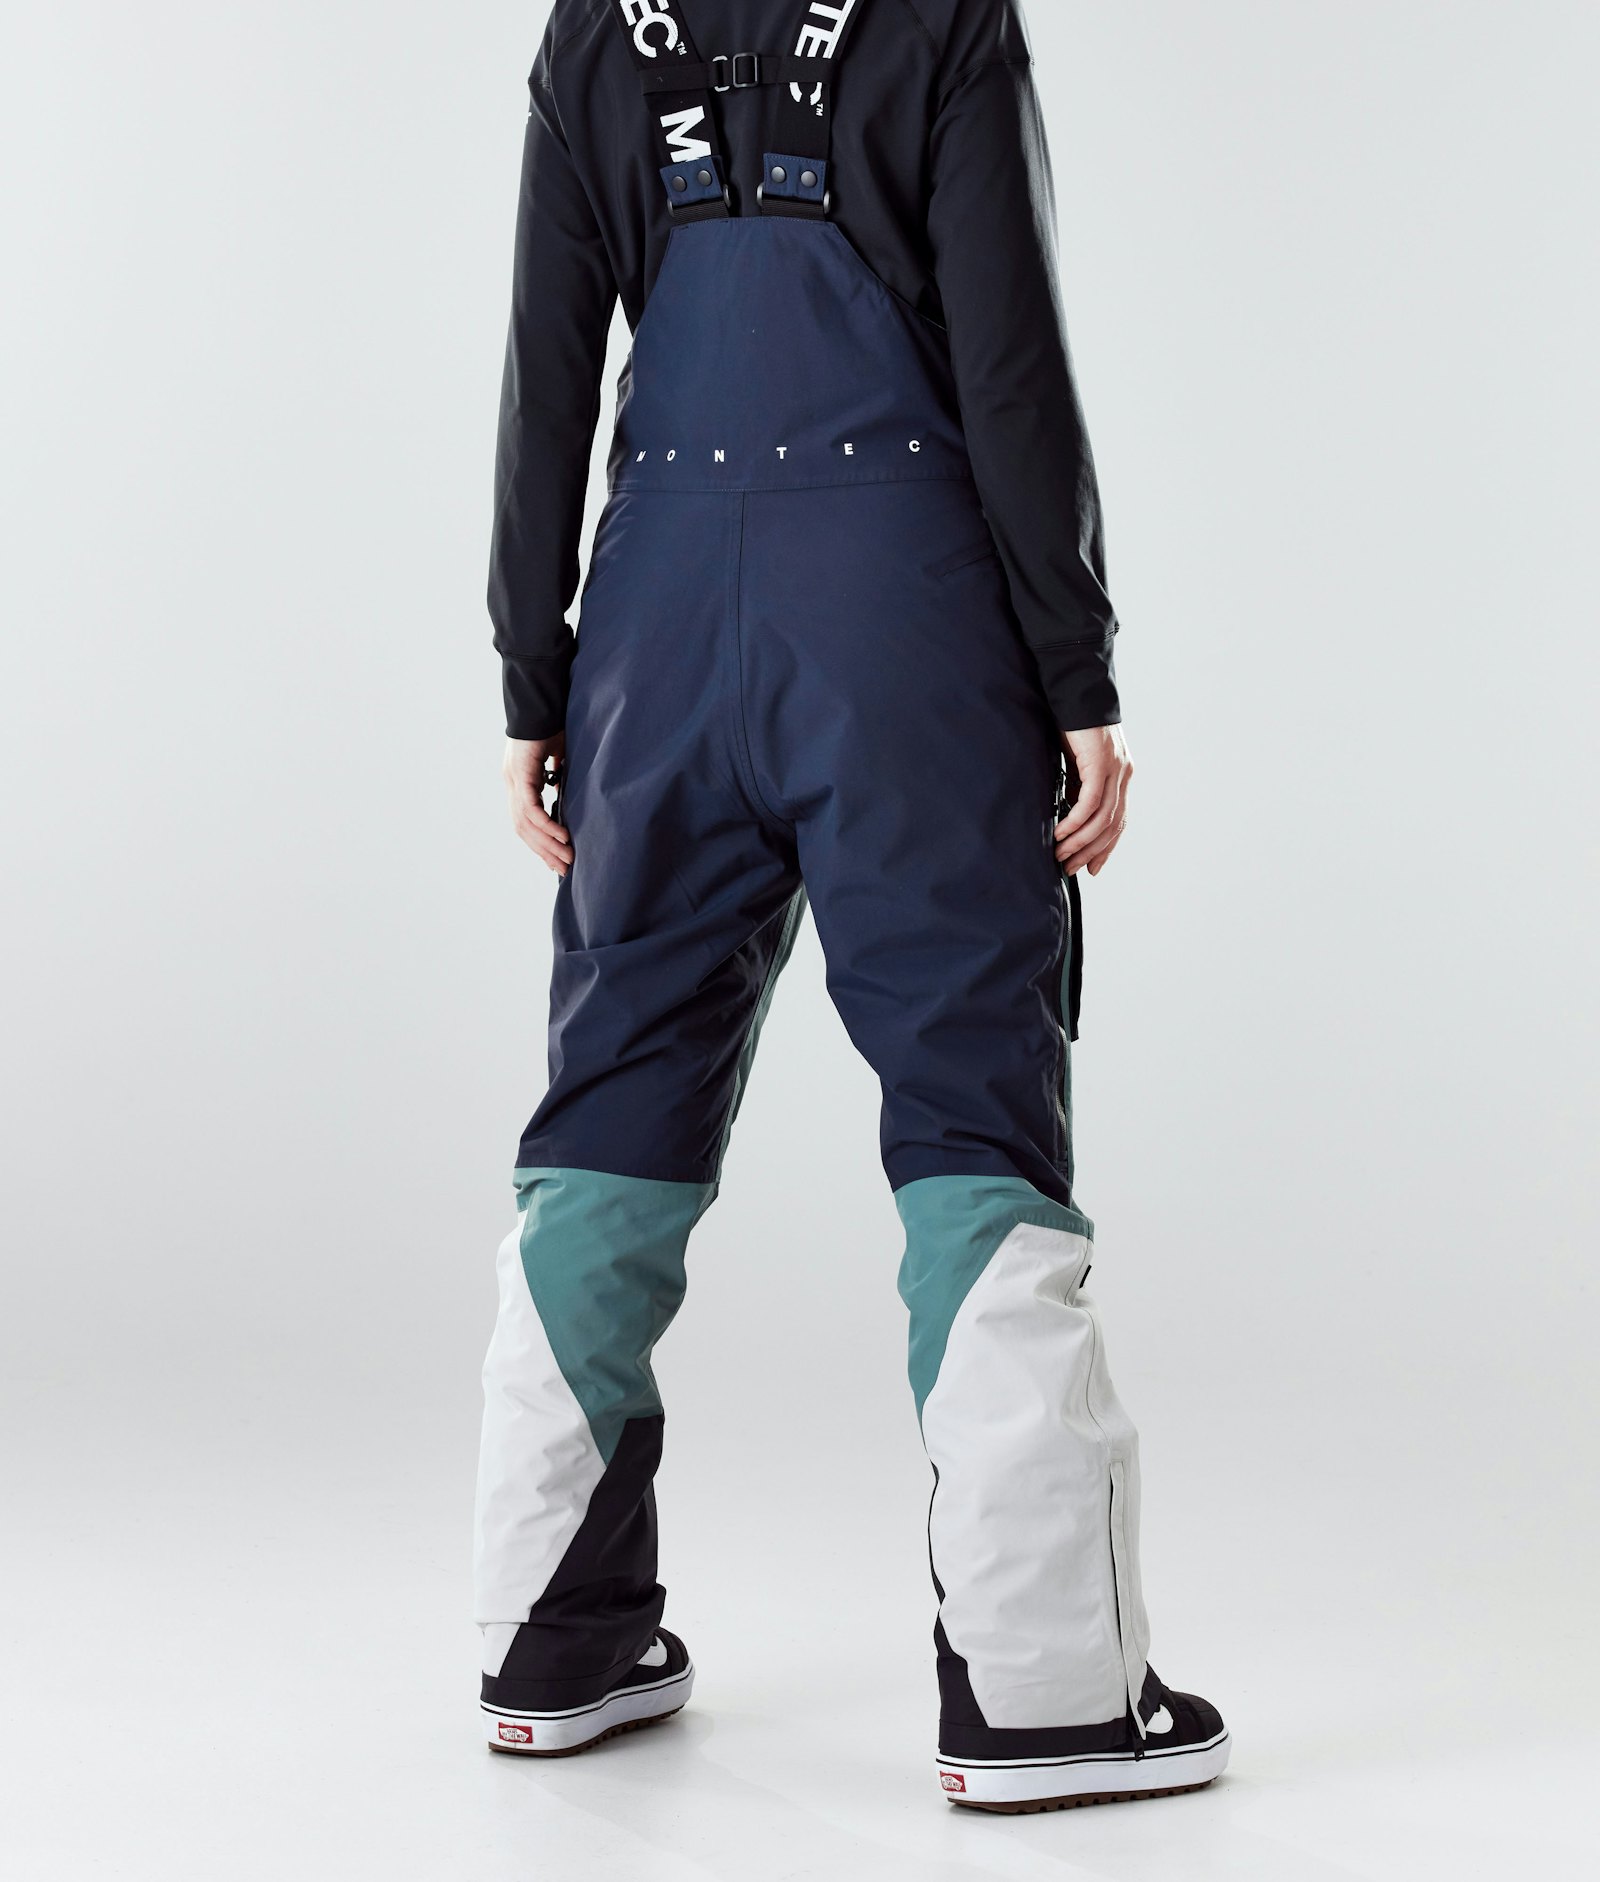 Montec Fawk W 2020 Spodnie Snowboardowe Kobiety Marine/Atlantic/Light Grey